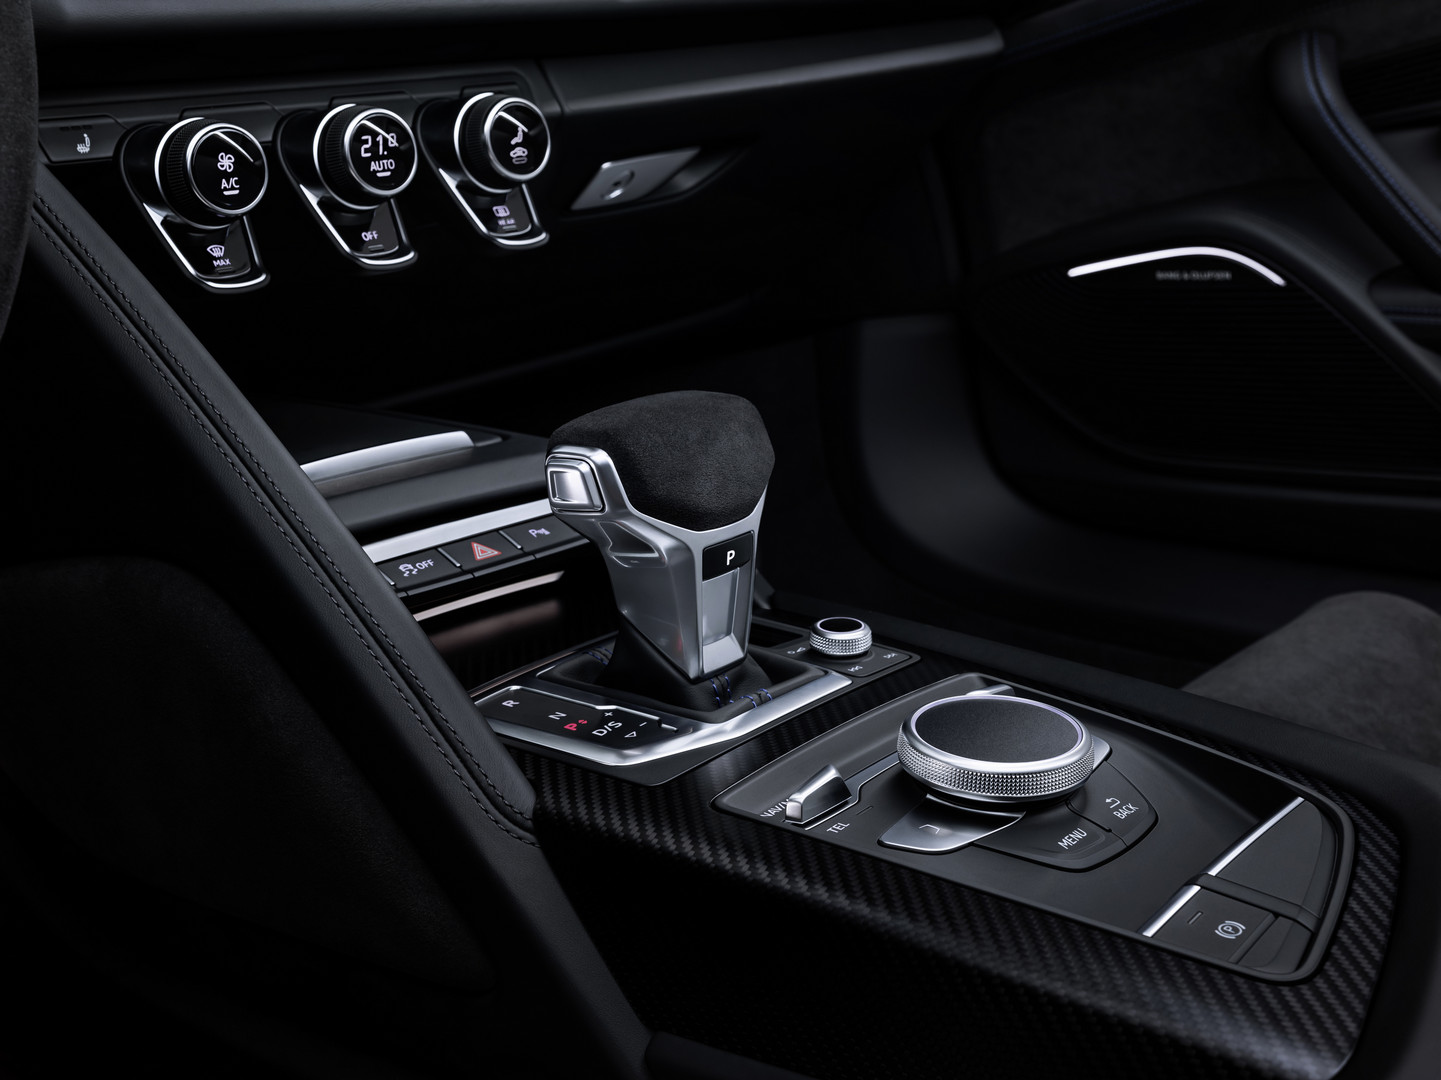 В основе пакета лежит атмосферный двигатель V10. Audi заменил значок «Plus» на «Performance» и предложил менее ориентированную на производительность модель V10 по сниженной цене.